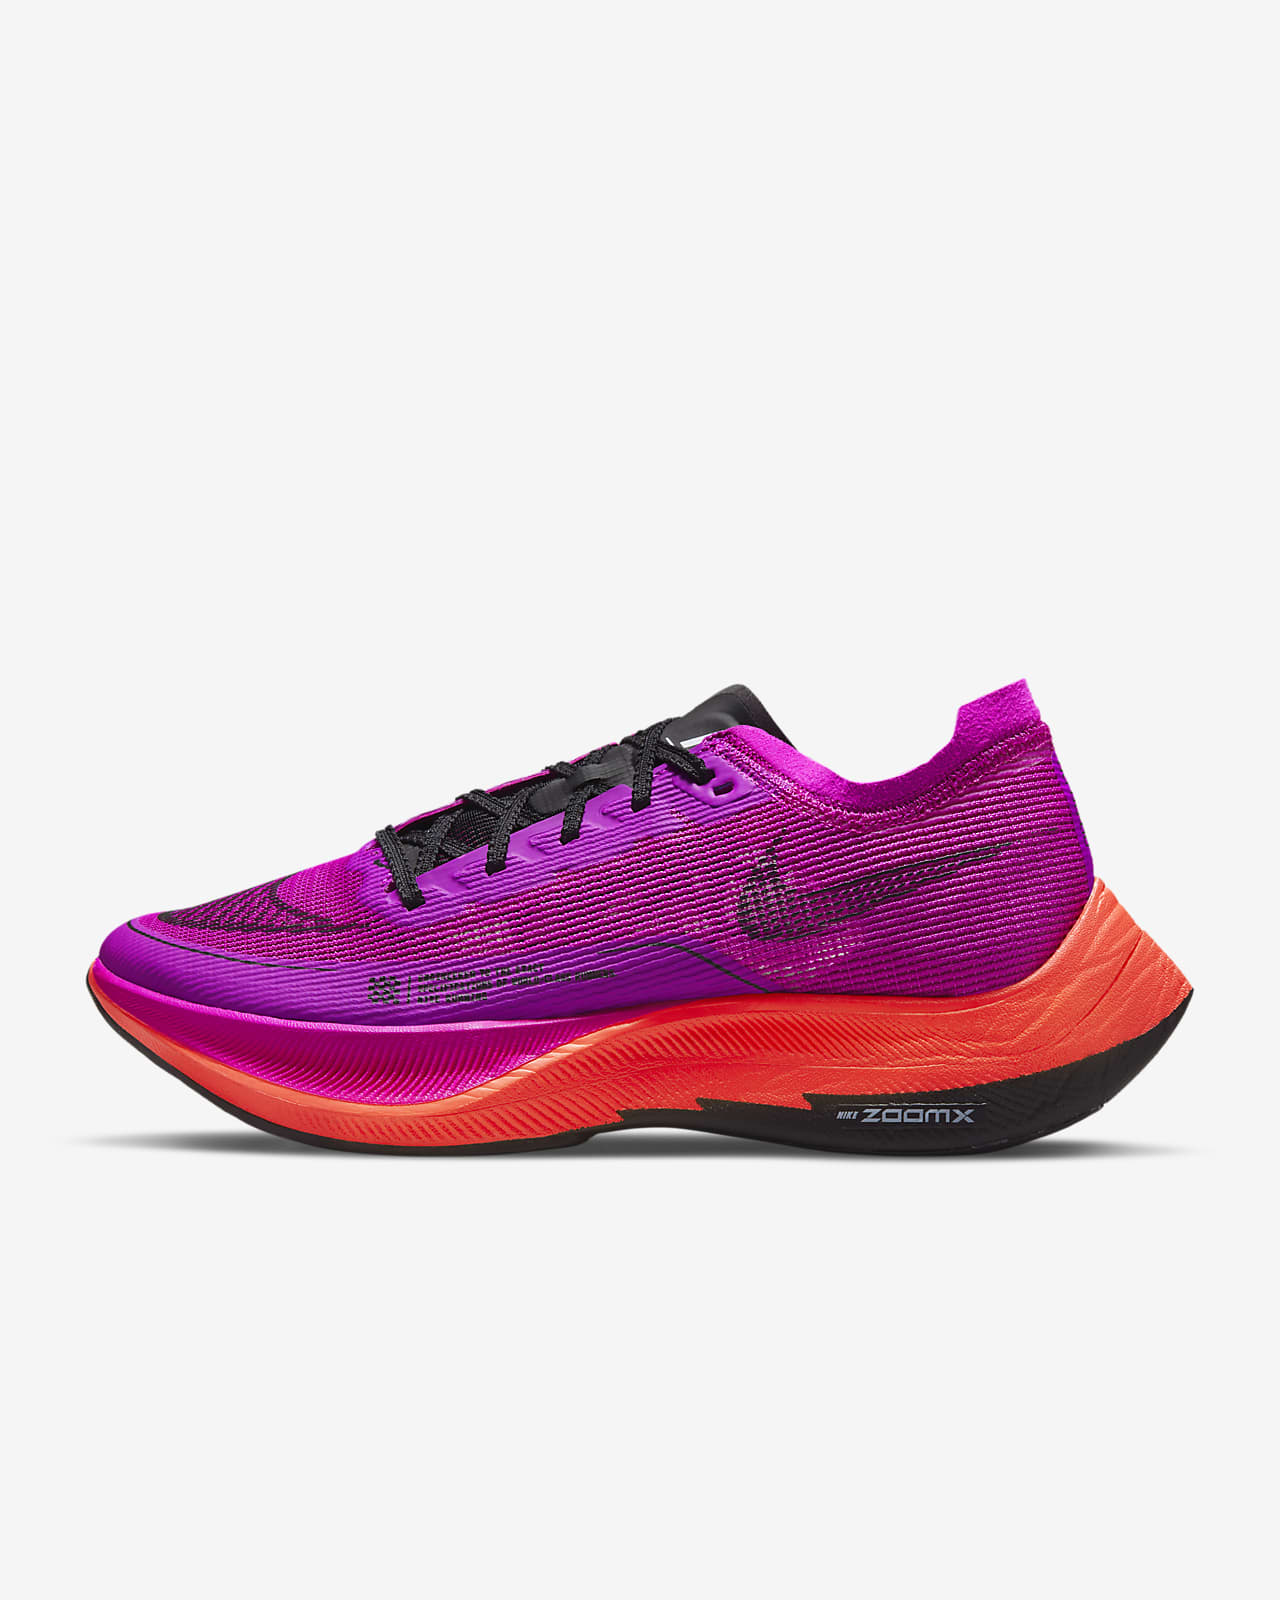 Nike ZoomX Vaporfly Next% 2 女款路跑競速鞋